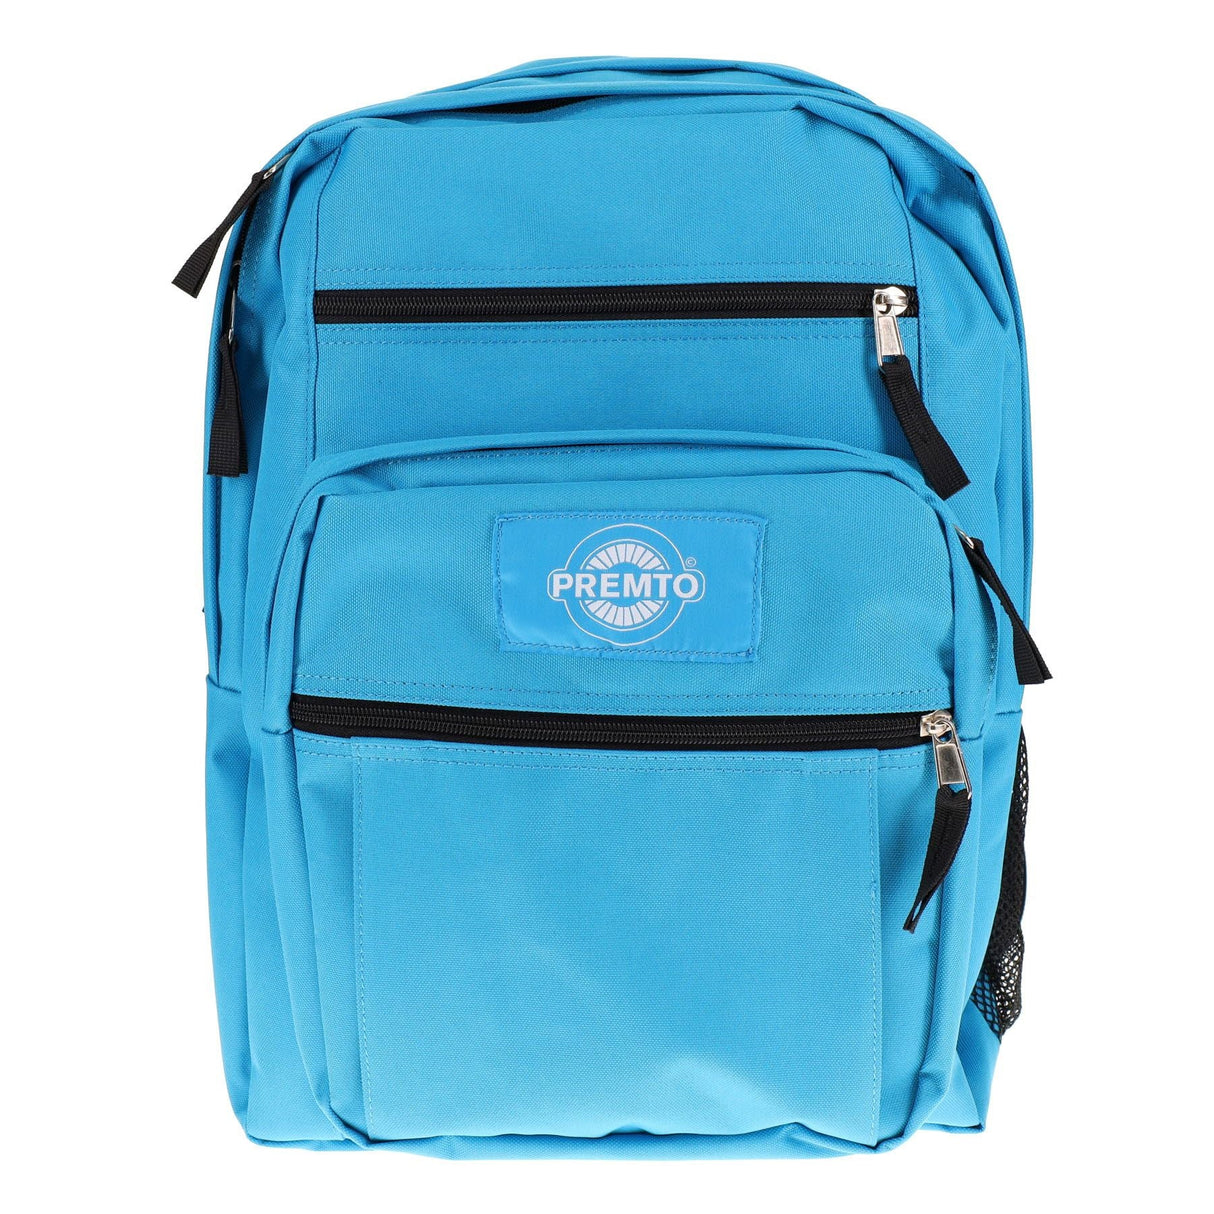 Premto 34L Backpack - Printer Blue | Stationery Shop UK